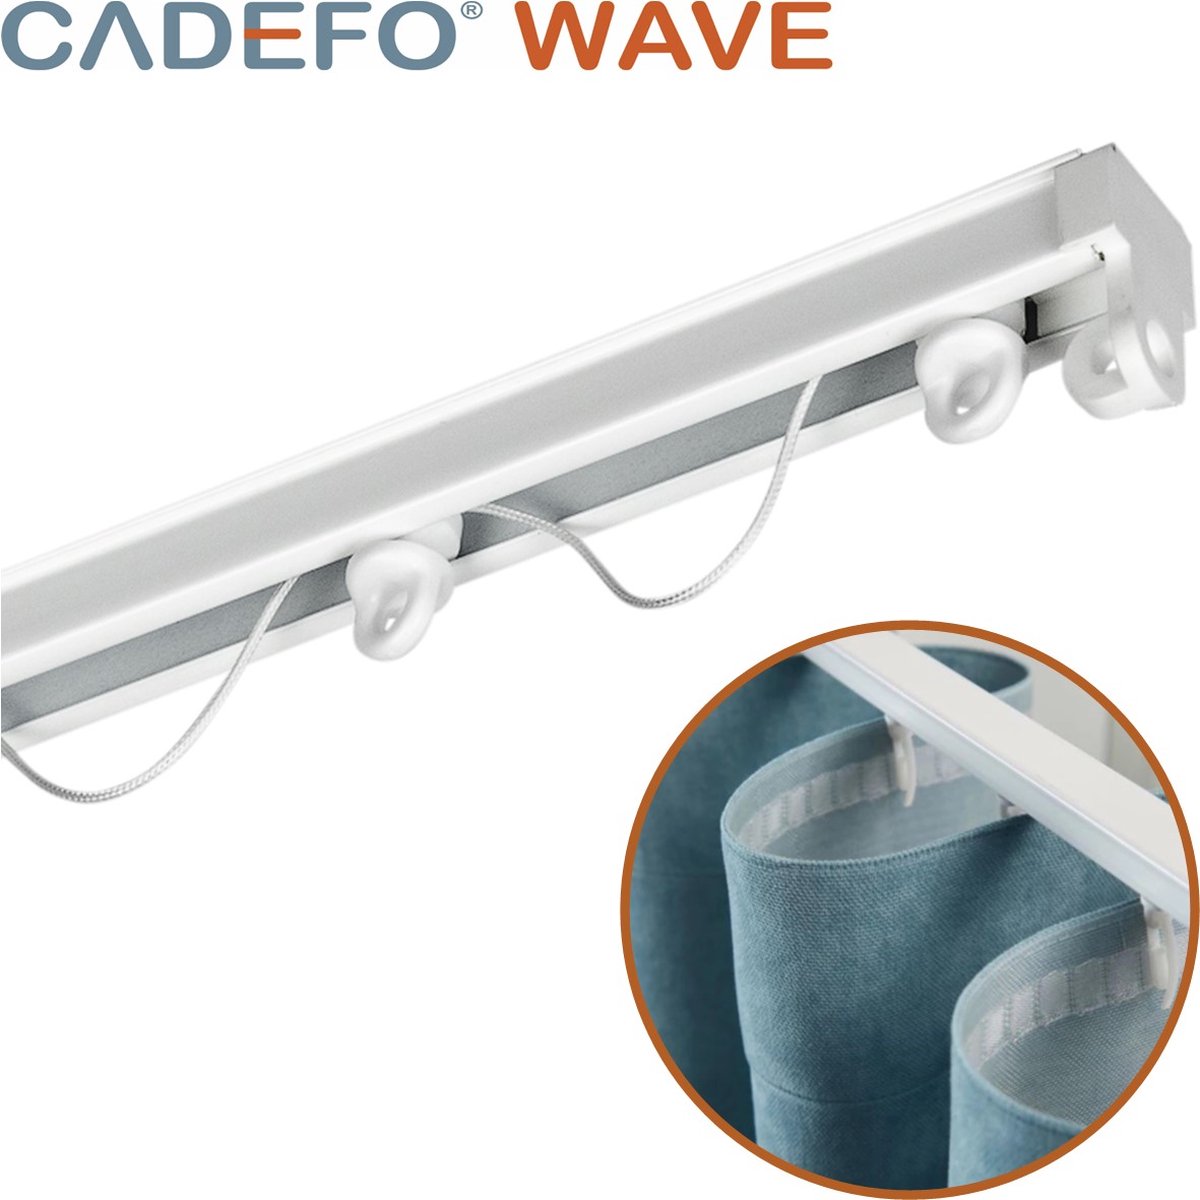 CADEFO WAVE (401 - 450 cm) Gordijnrails - Compleet op maat! - UIT 1 STUK - Leverbaar tot 6 meter - Plafondbevestiging - Lengte 402 cm